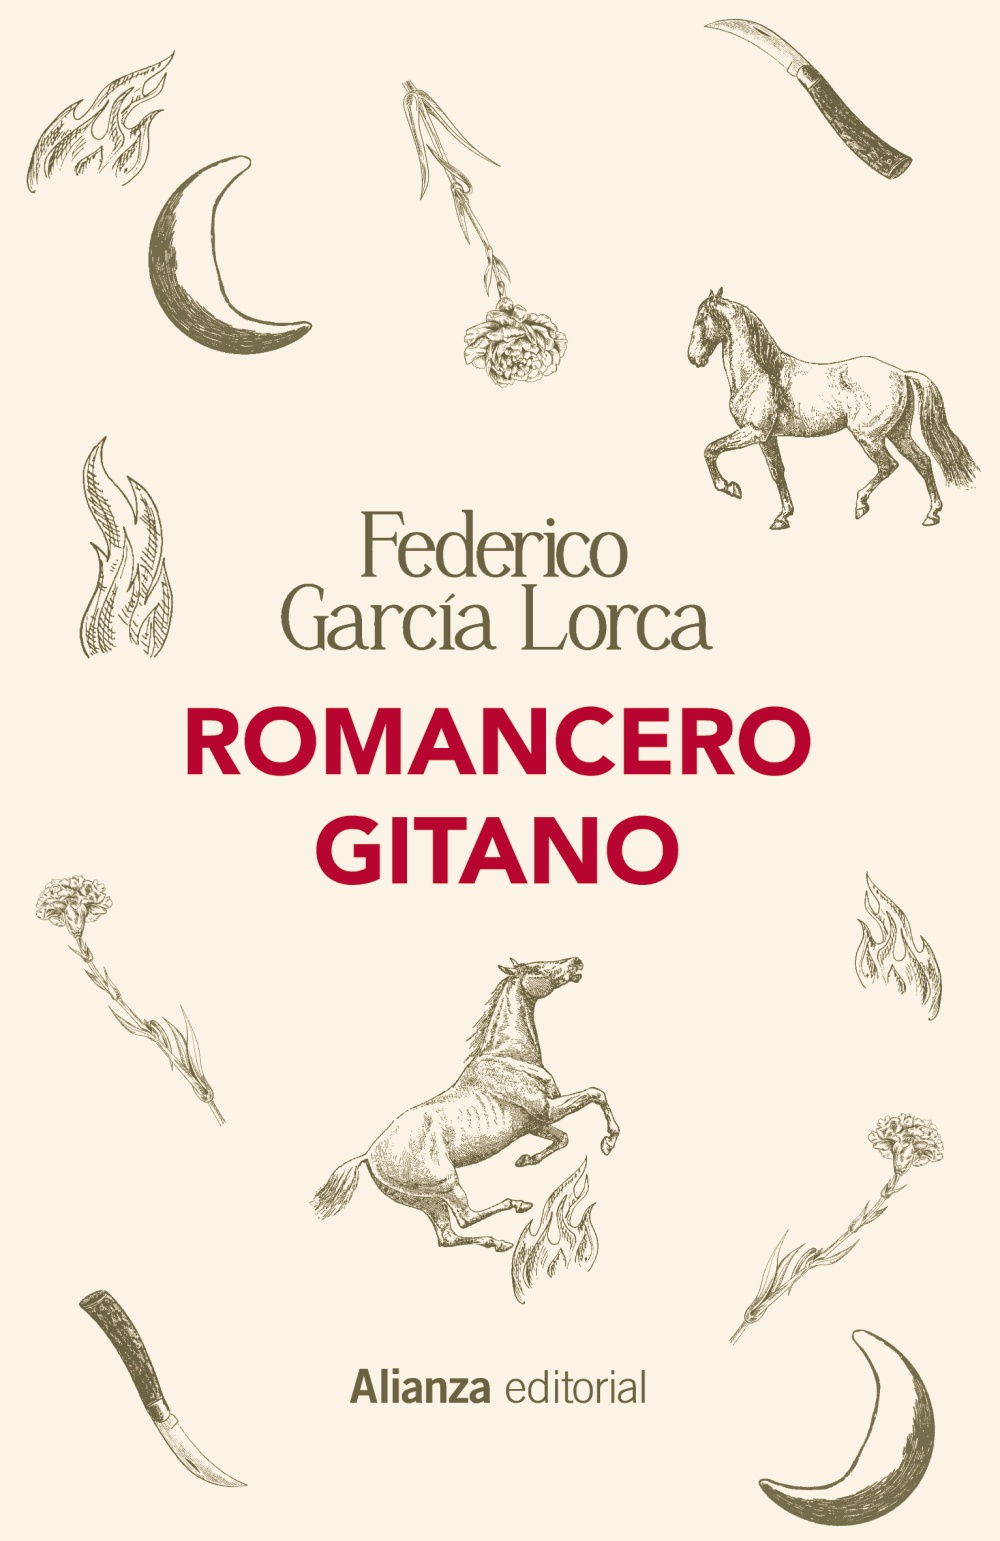 Romancero gitano, de Federico García Lorca